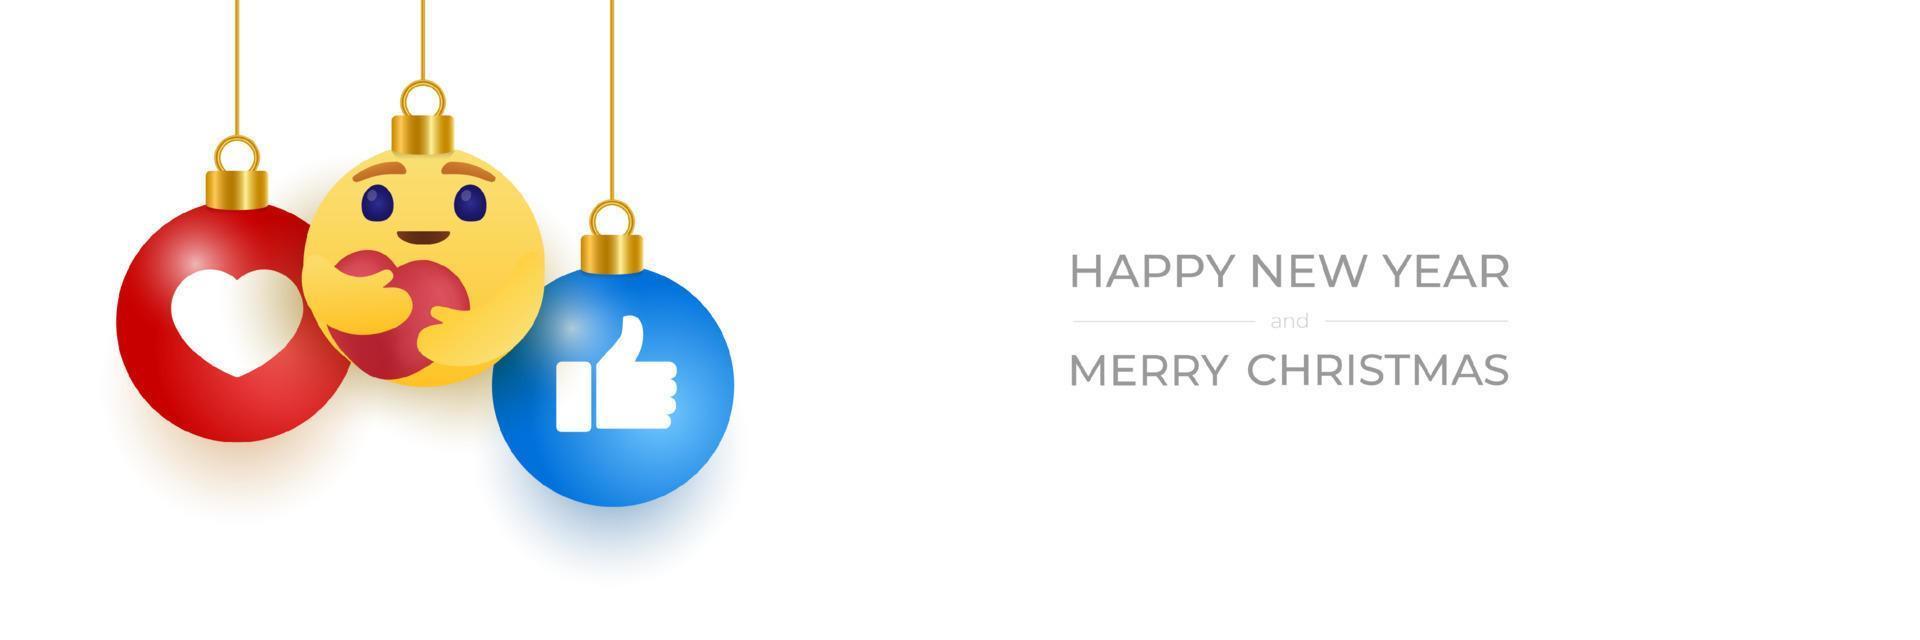 carte de voeux pour le nouvel an 2021 avec un visage emoji souriant qui se bloque sur un fil comme un jouet de Noël, une balle ou une boule. illustration vectorielle de nouvel an émotion concept. vecteur